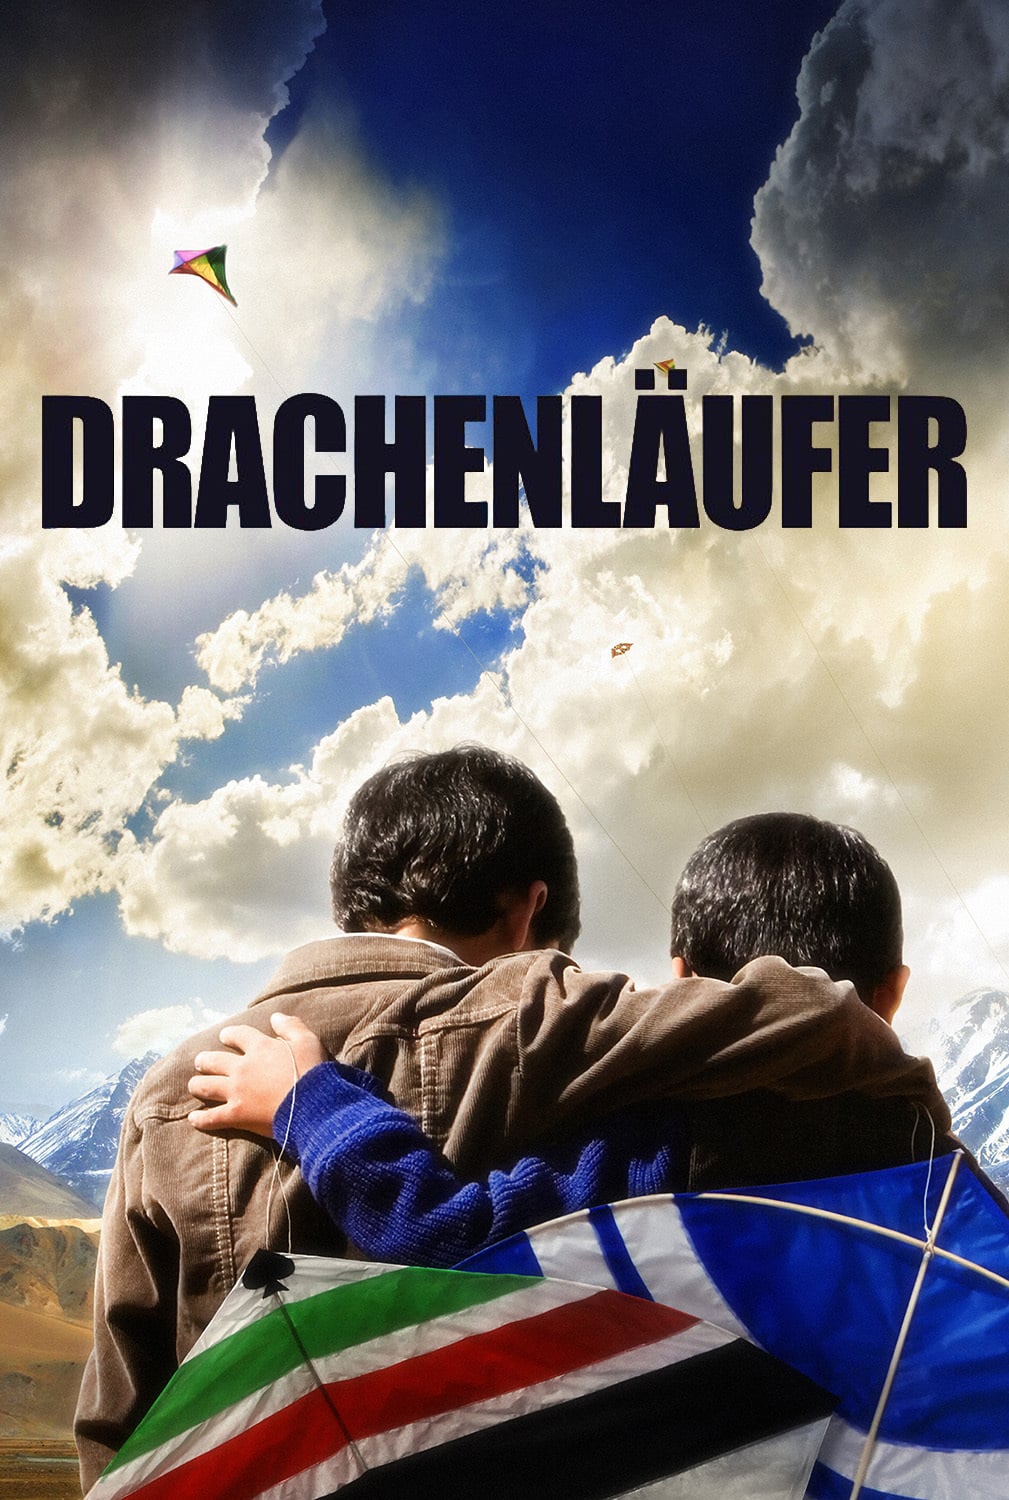 Plakat von "Drachenläufer"